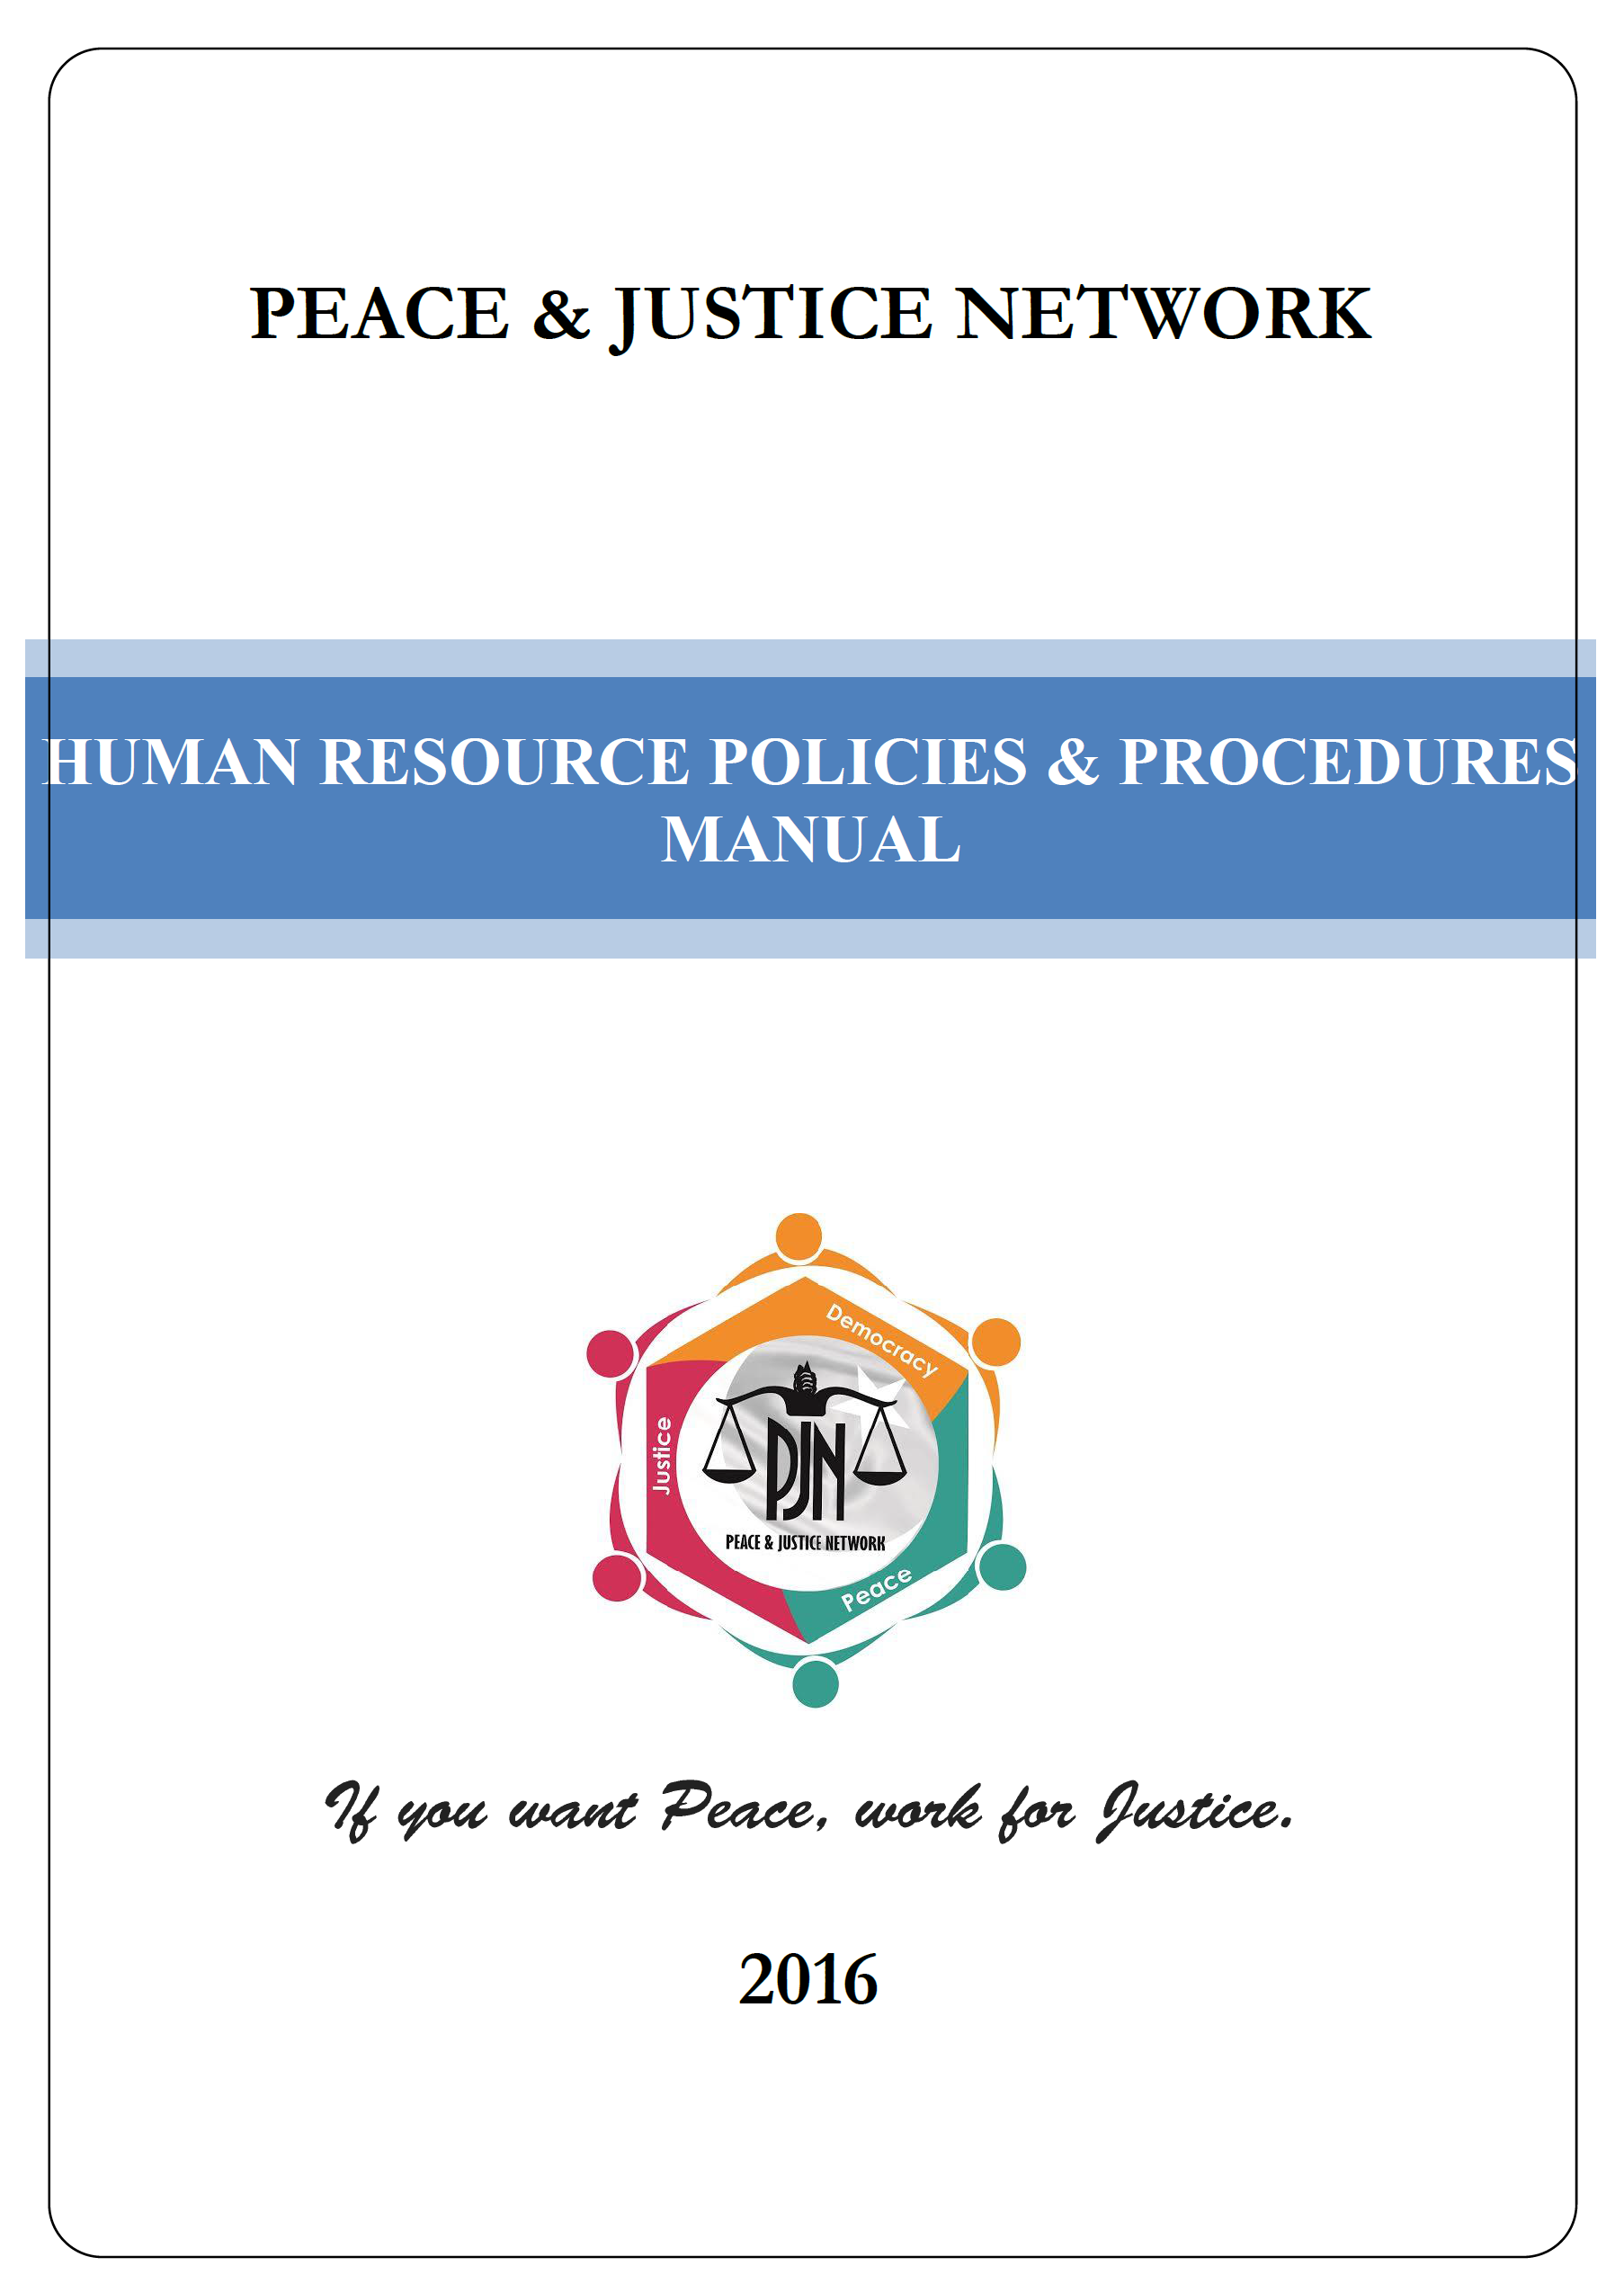 PJN HR Manual